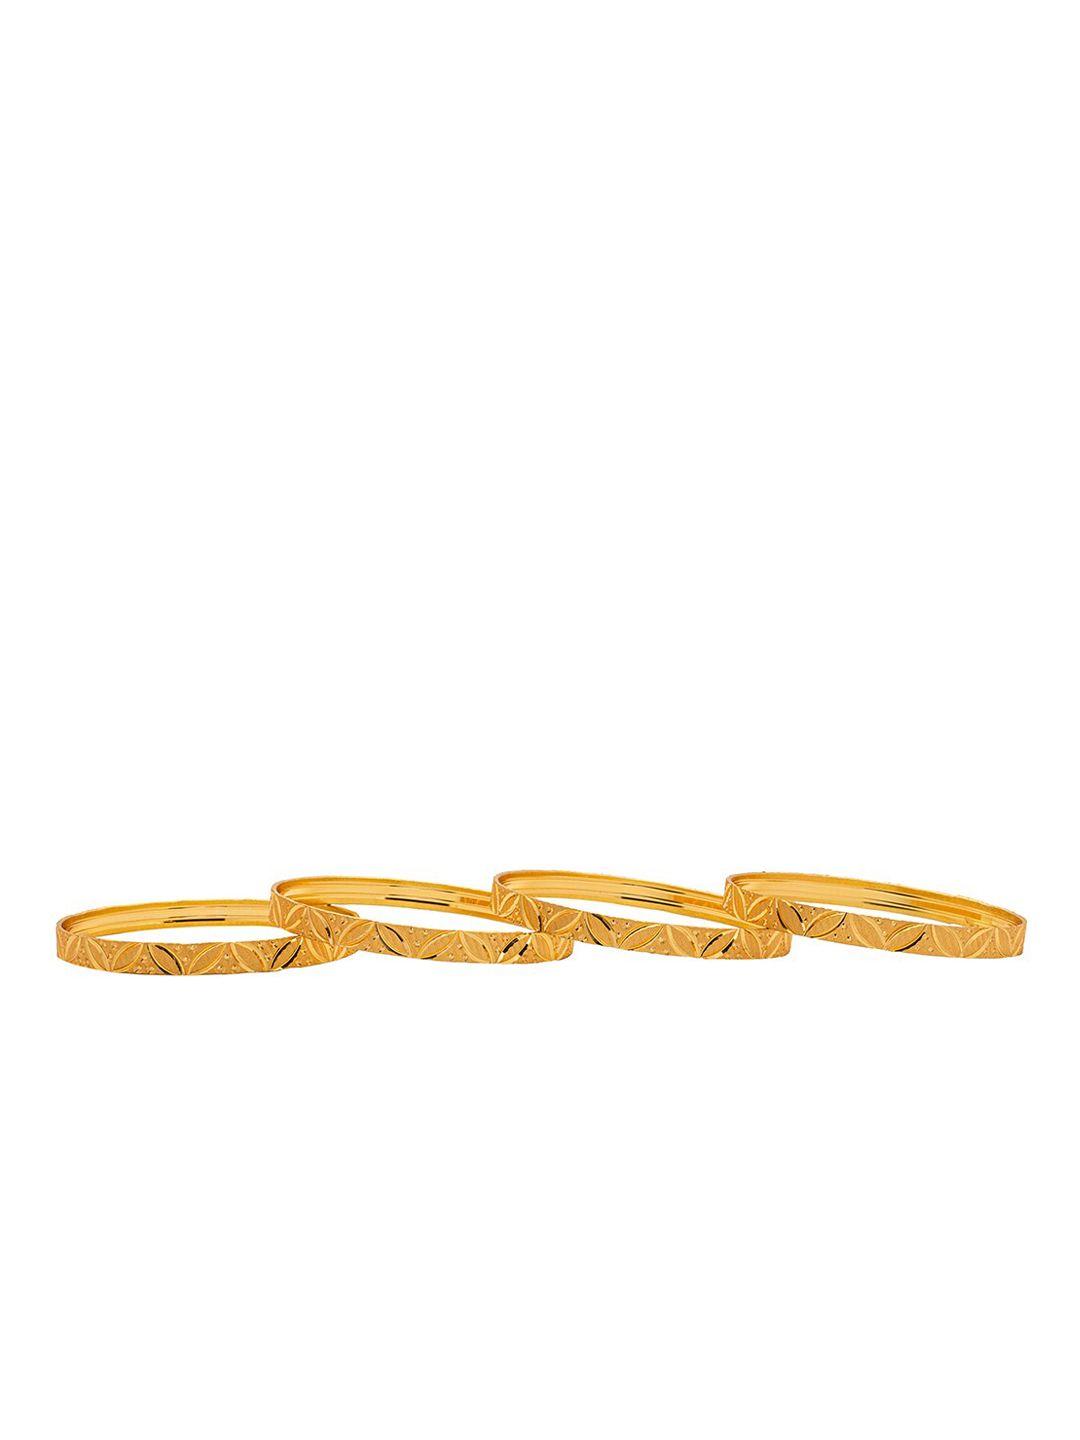 shining jewel - by shivansh set of 4 gold-plated bangle